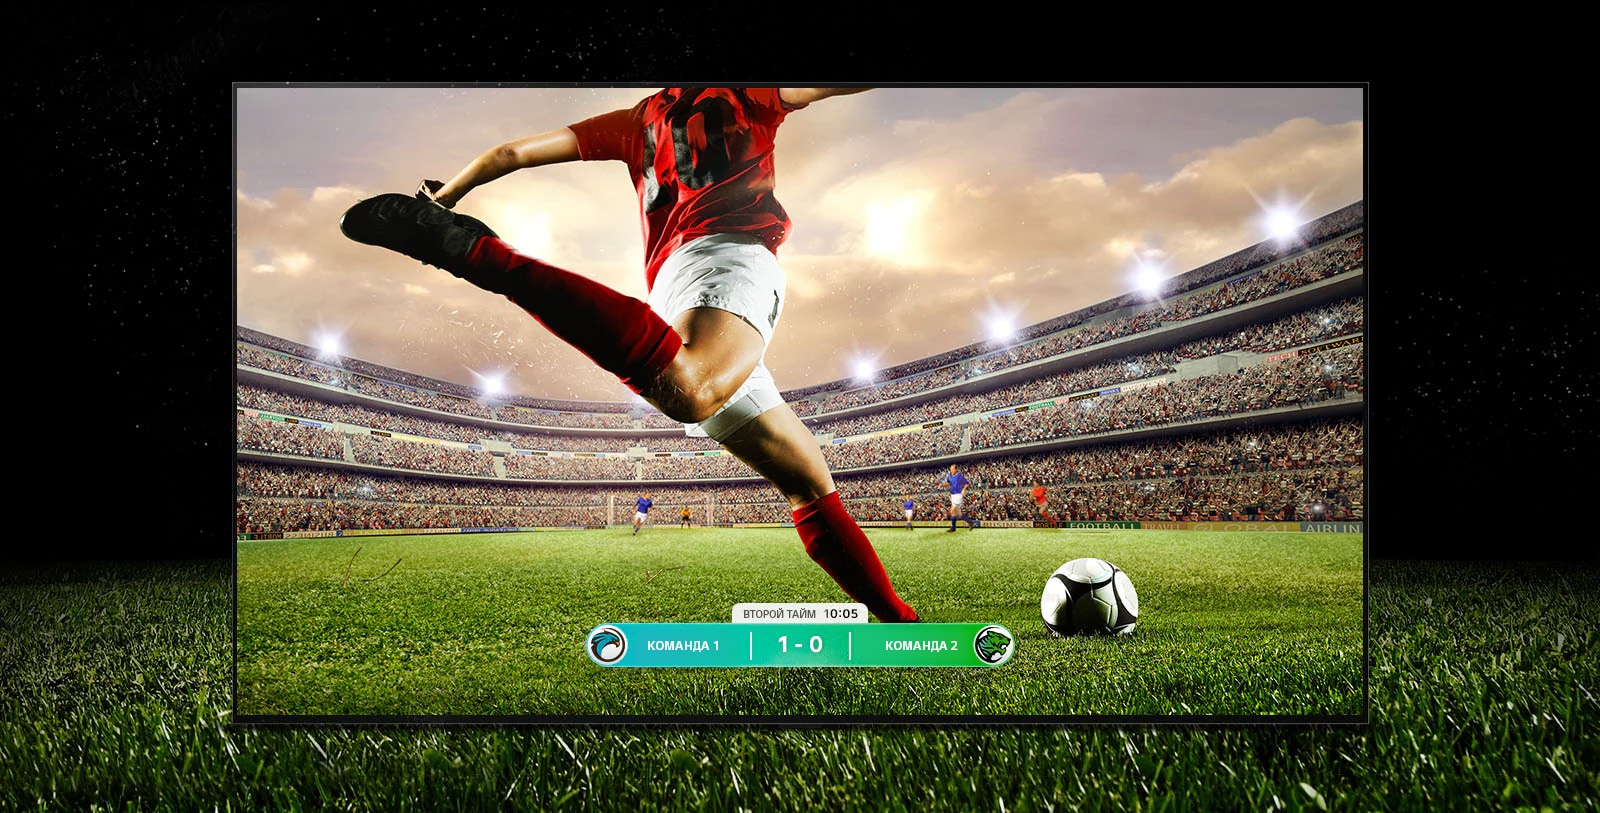 Изображение телевизора с игрой в футбол и игроком на красной полосе, который собирается пнуть мяч через стадион. В нижней части экрана виден счет игры. Зеленая трава выходит за пределы экрана и отображается на черном фоне.